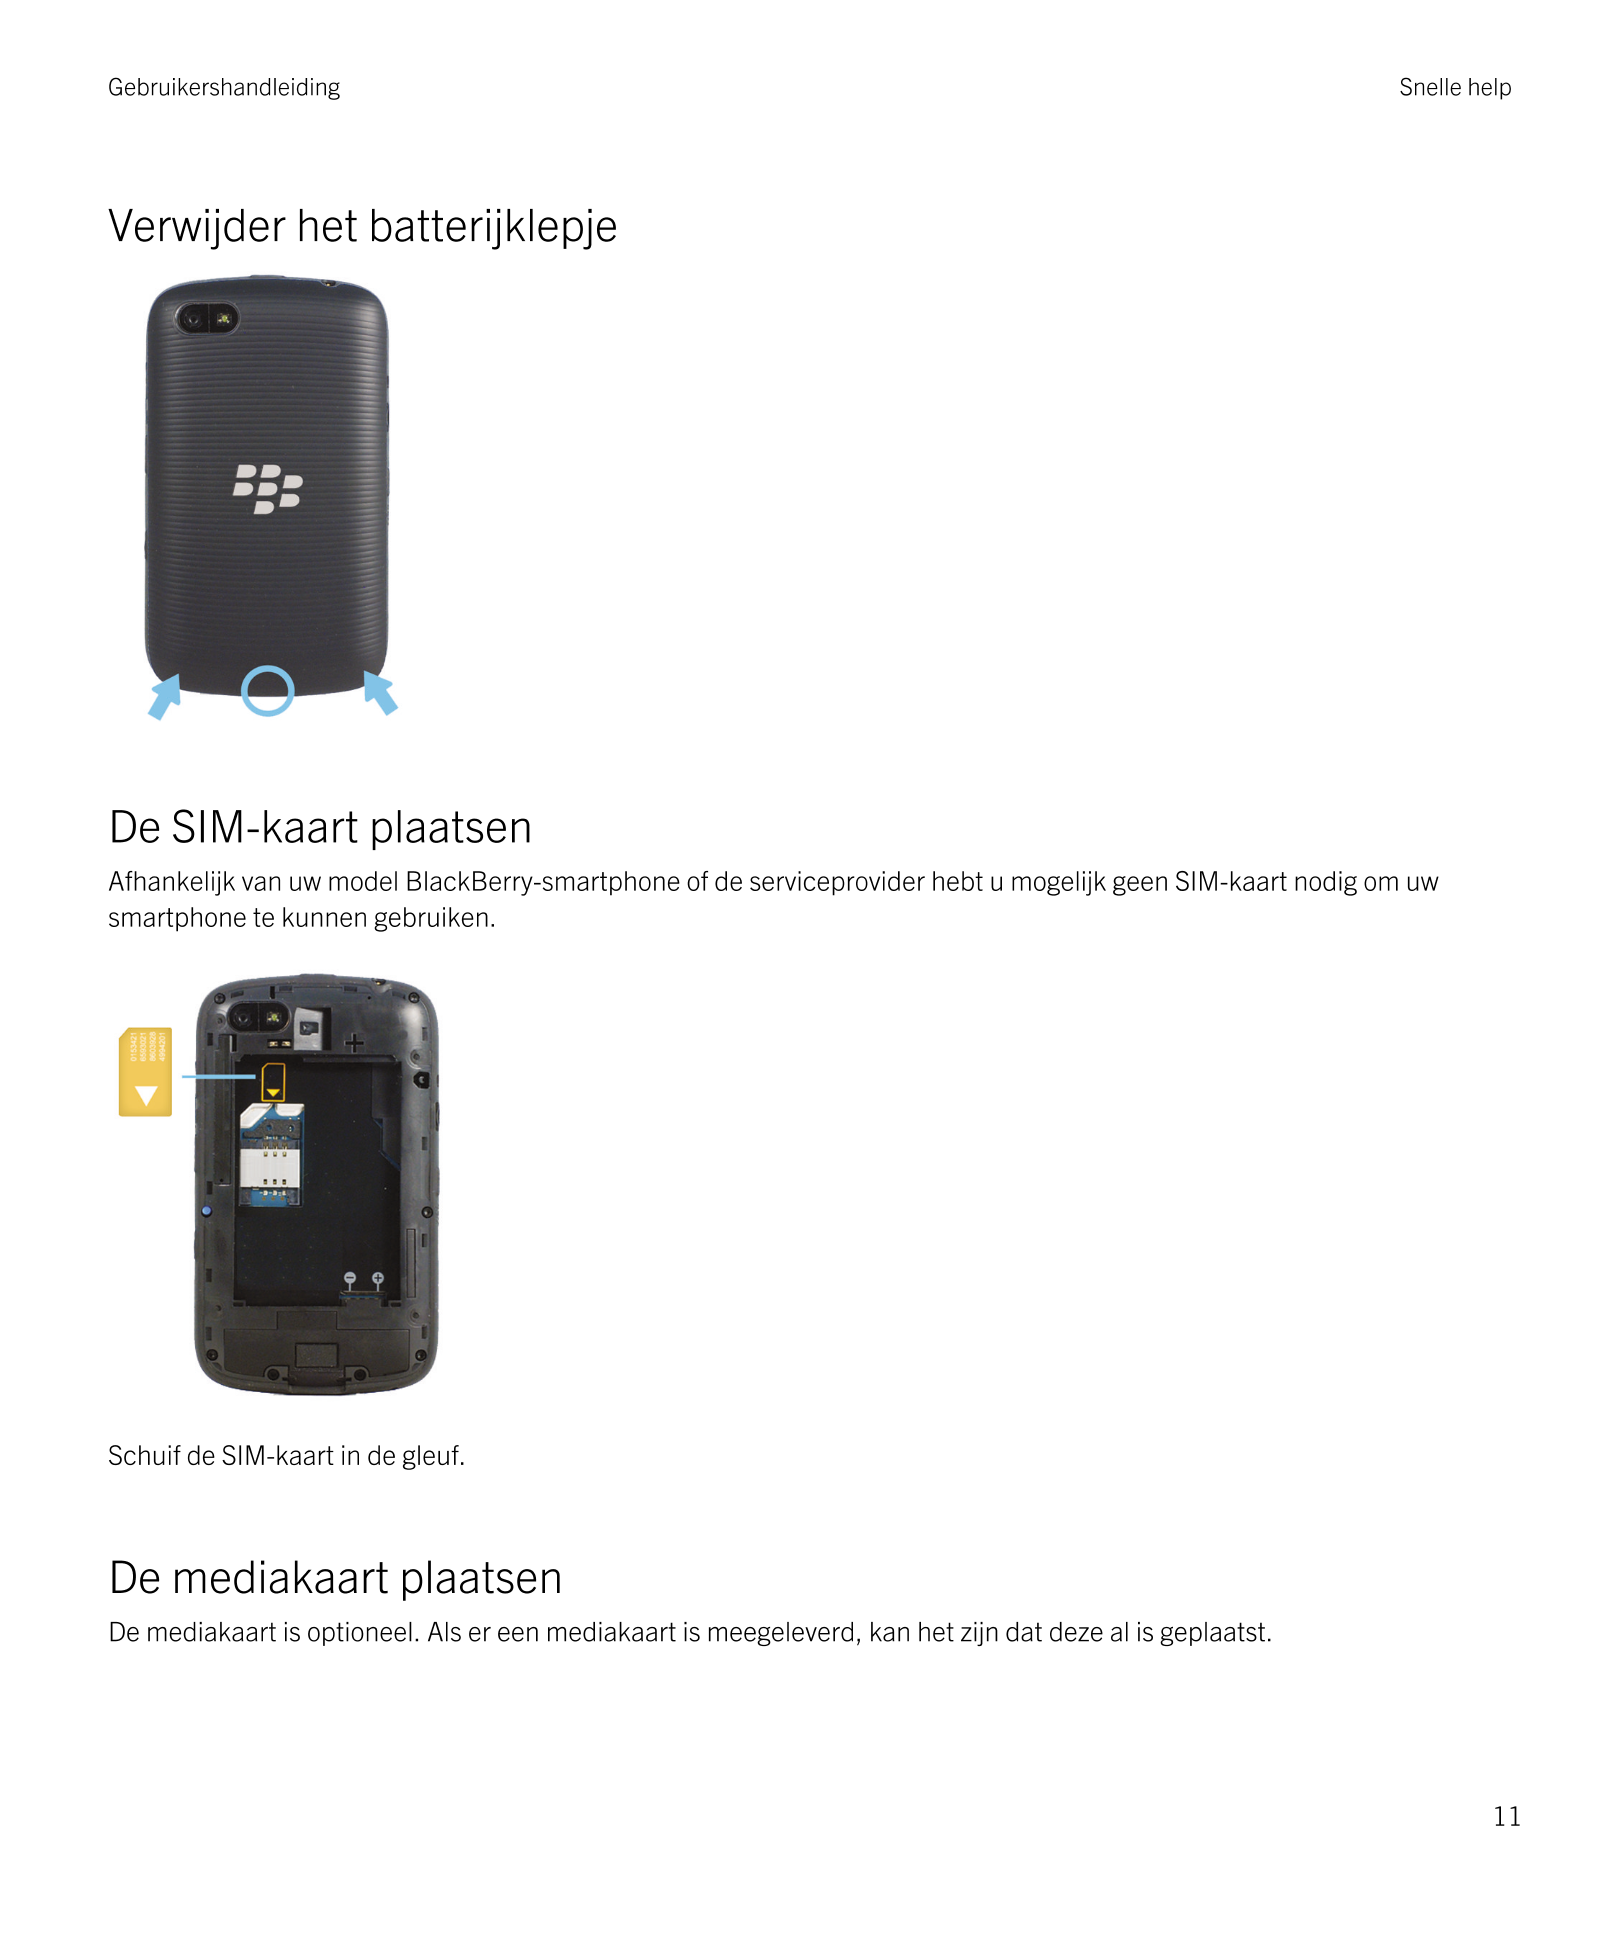 Gebruikershandleiding Snelle help
Verwijder het batterijklepje
De SIM-kaart plaatsen
Afhankelijk van uw model  BlackBerry-smartp